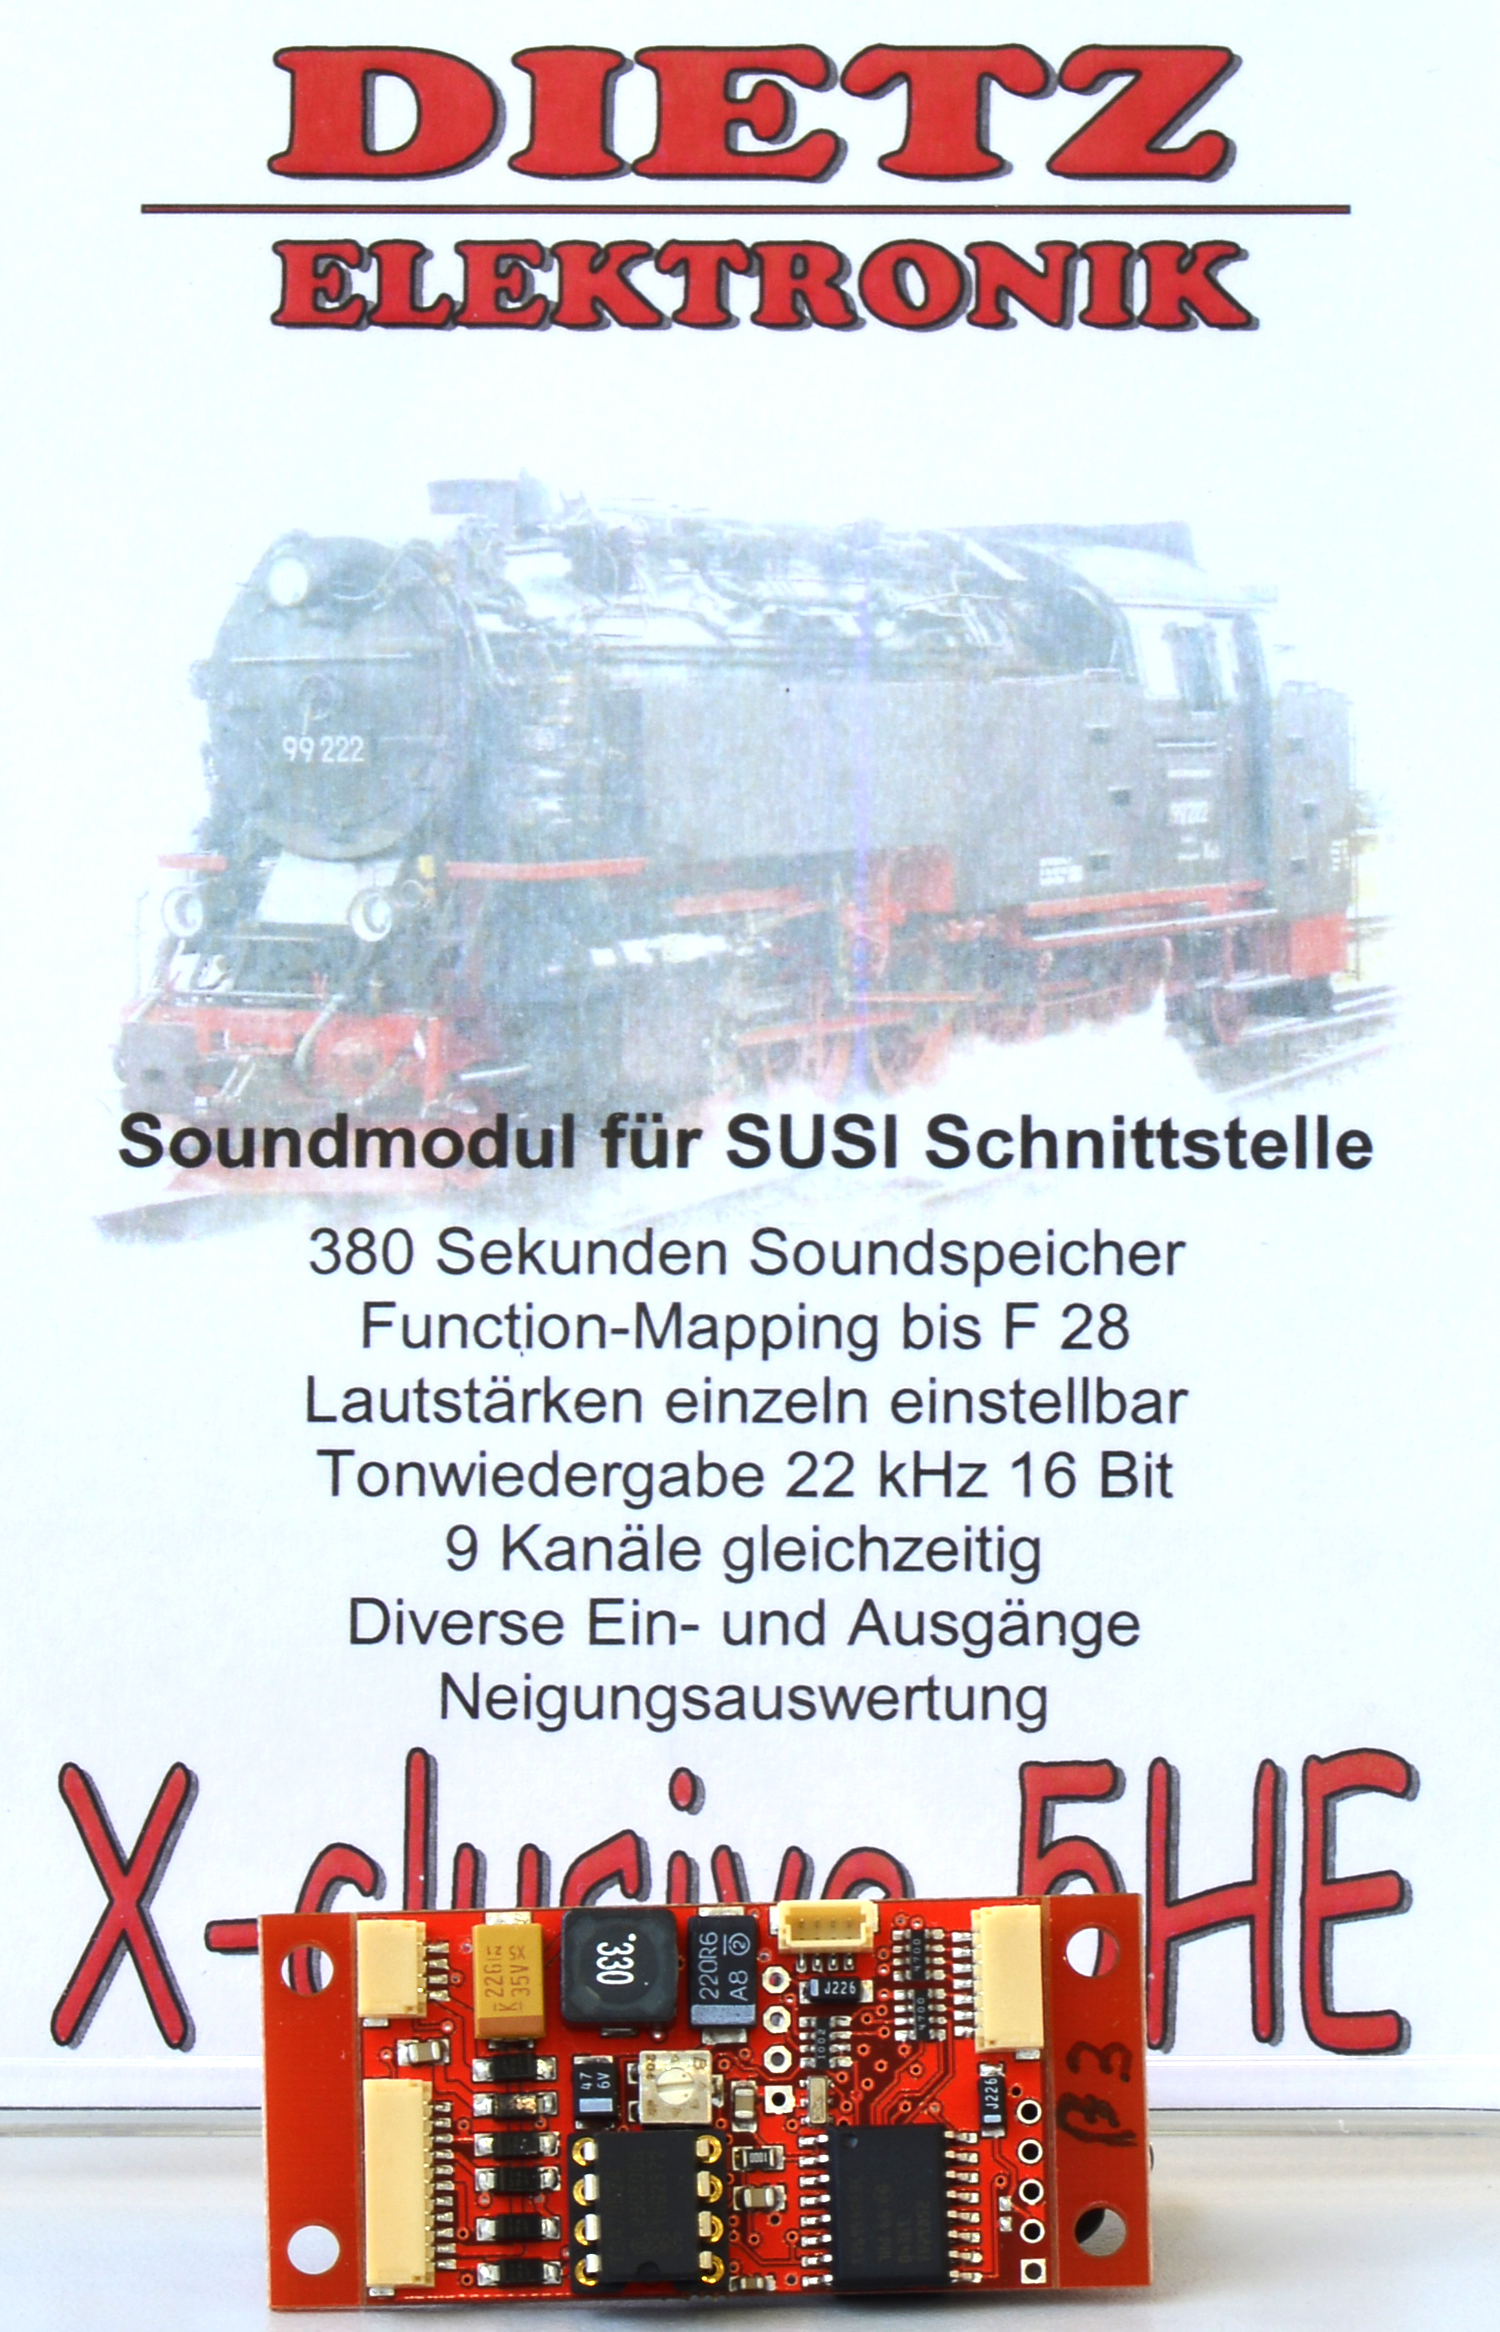 Soundmodul von Dietz - Neuheit 2014 - X-clusive-5HE